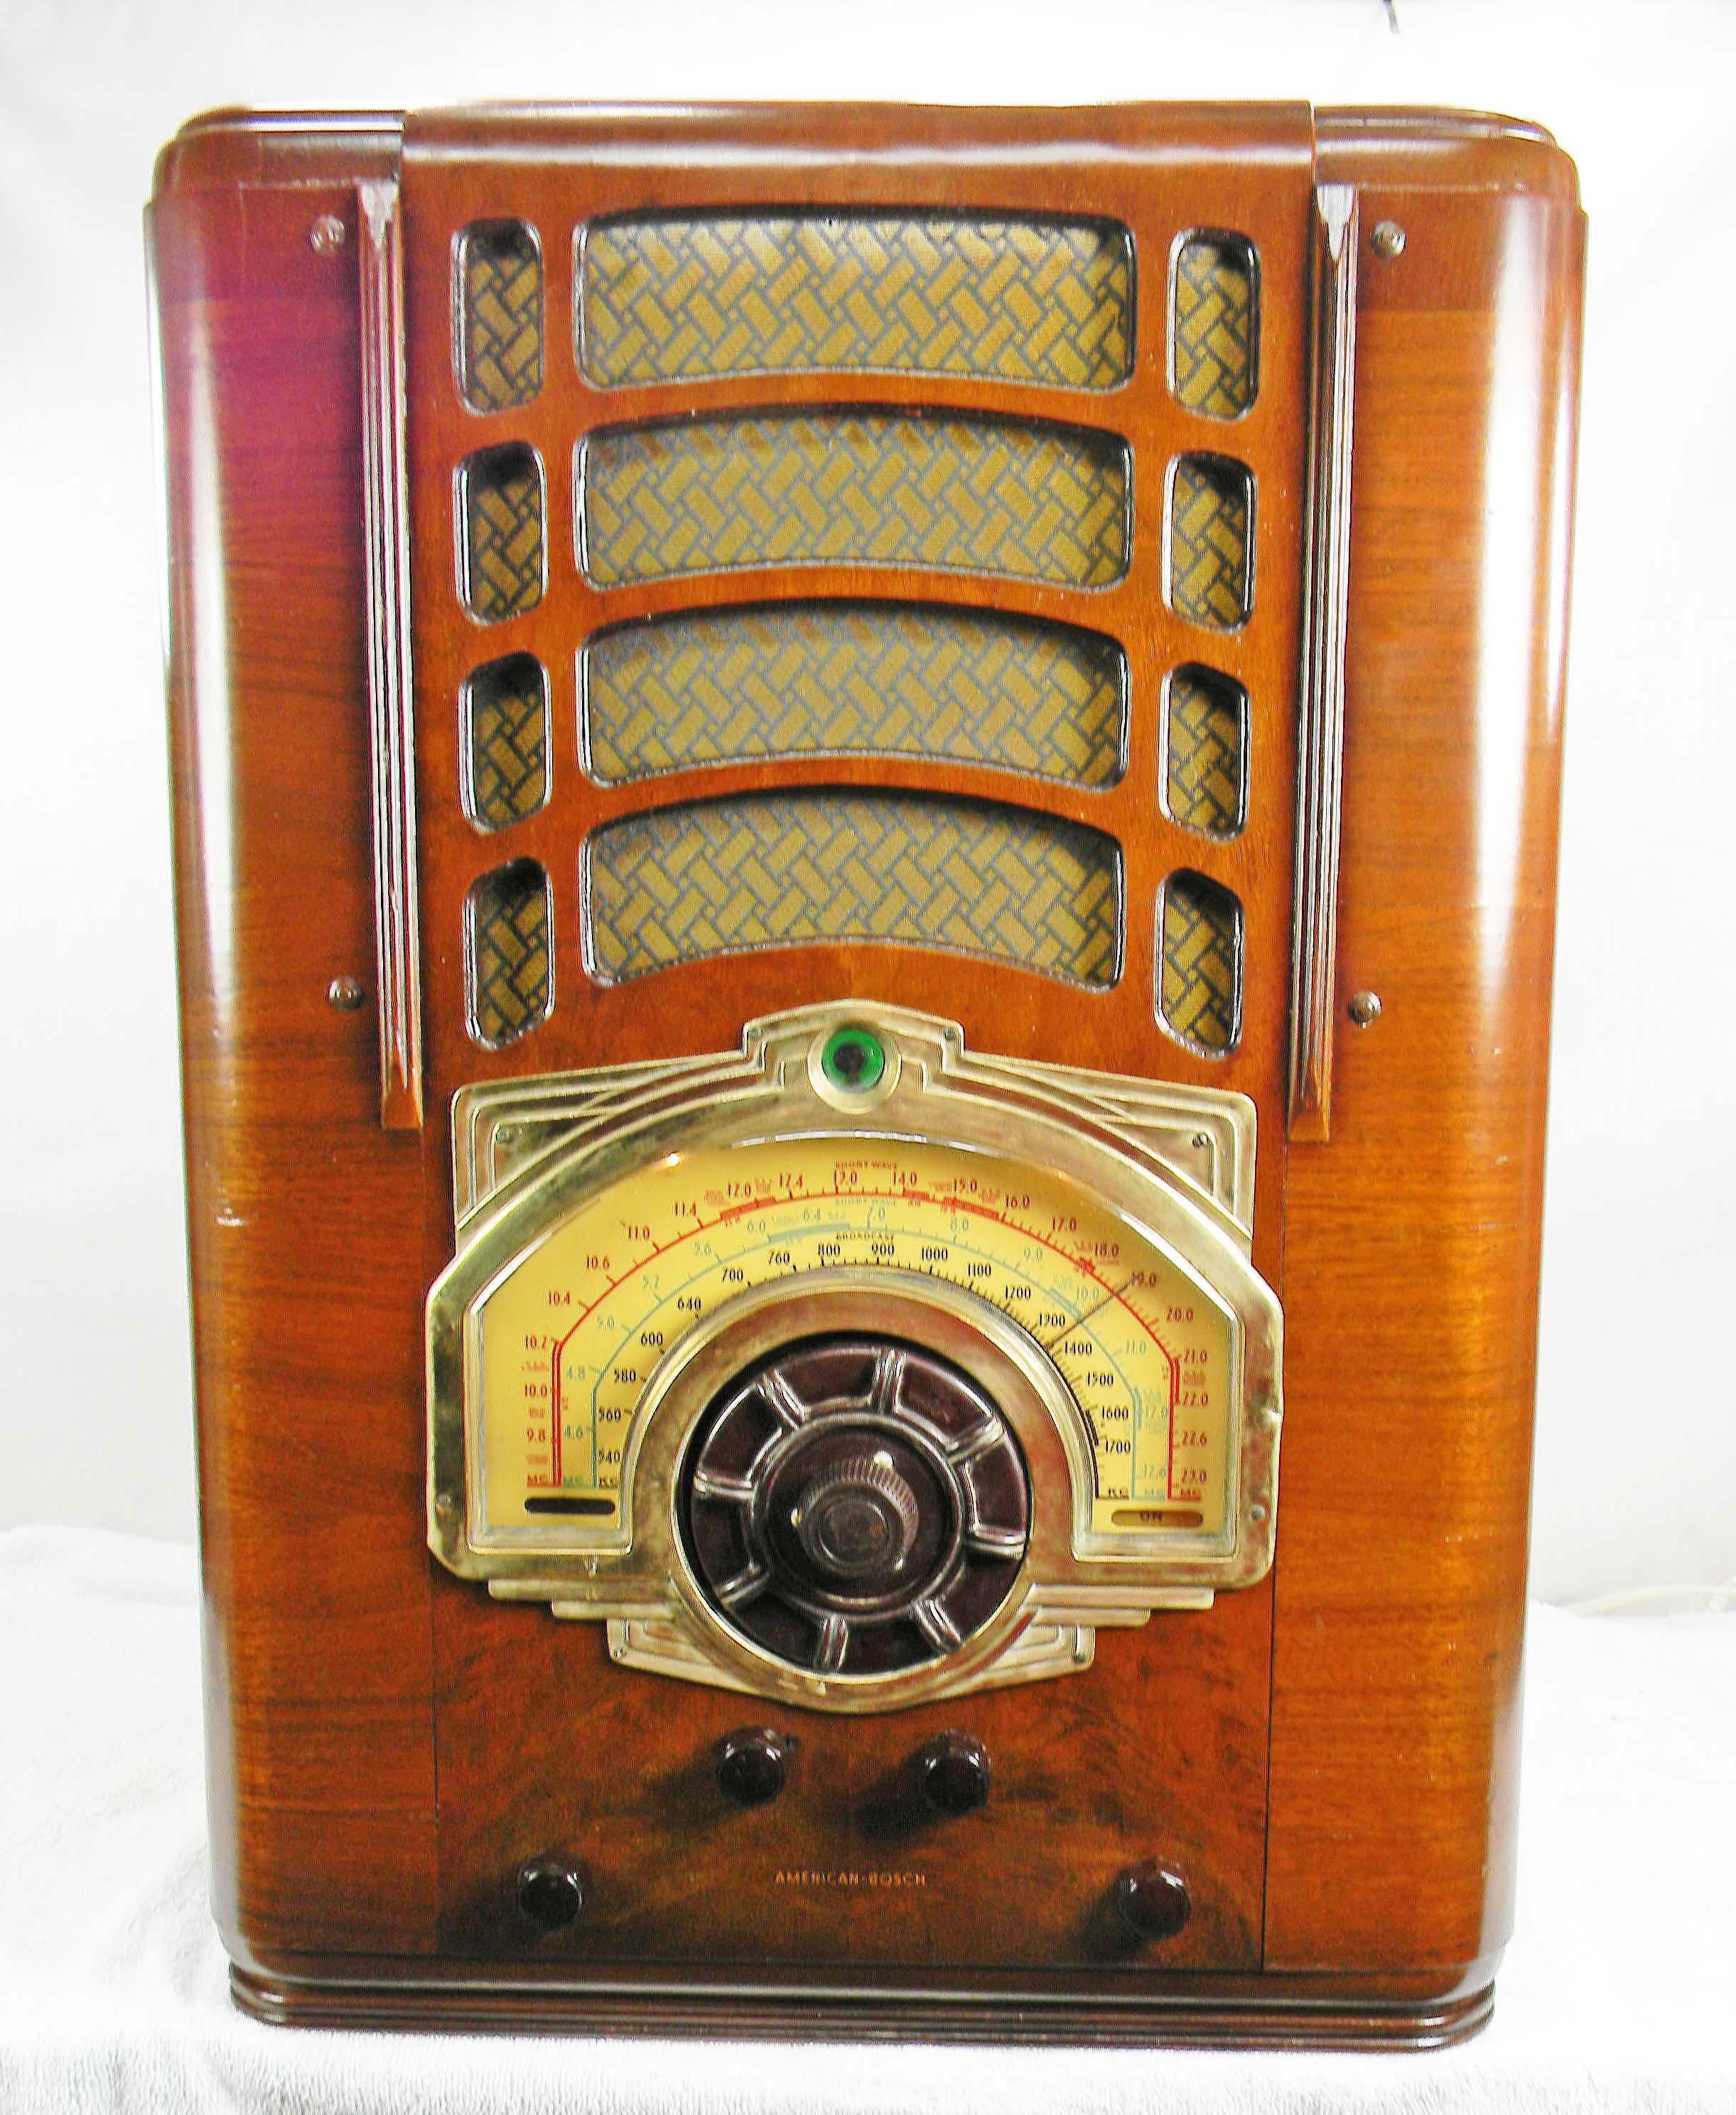 1939 radio